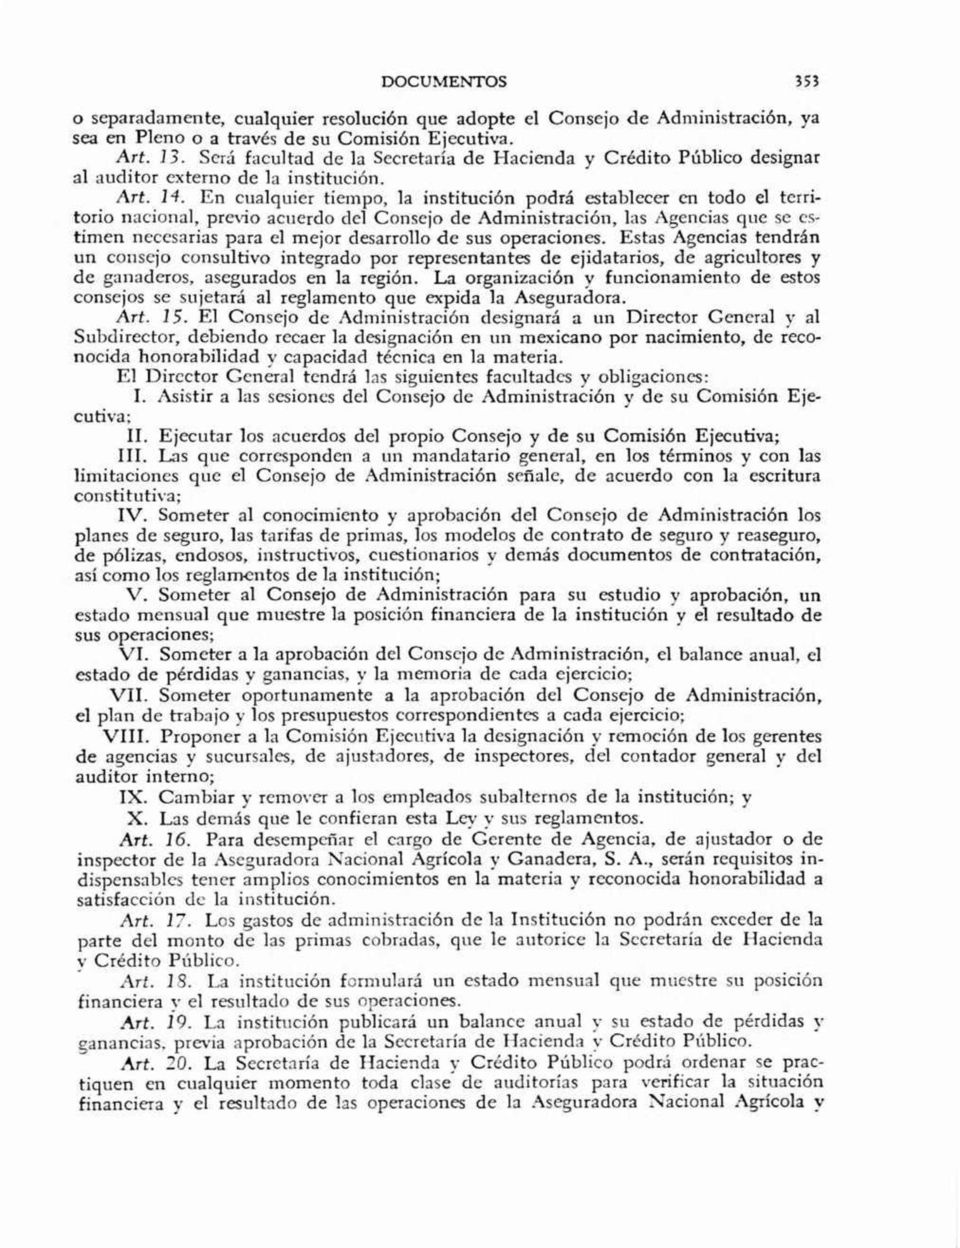 cienda y Crédito Público designar al auditor extemo de la institución. Art. H.